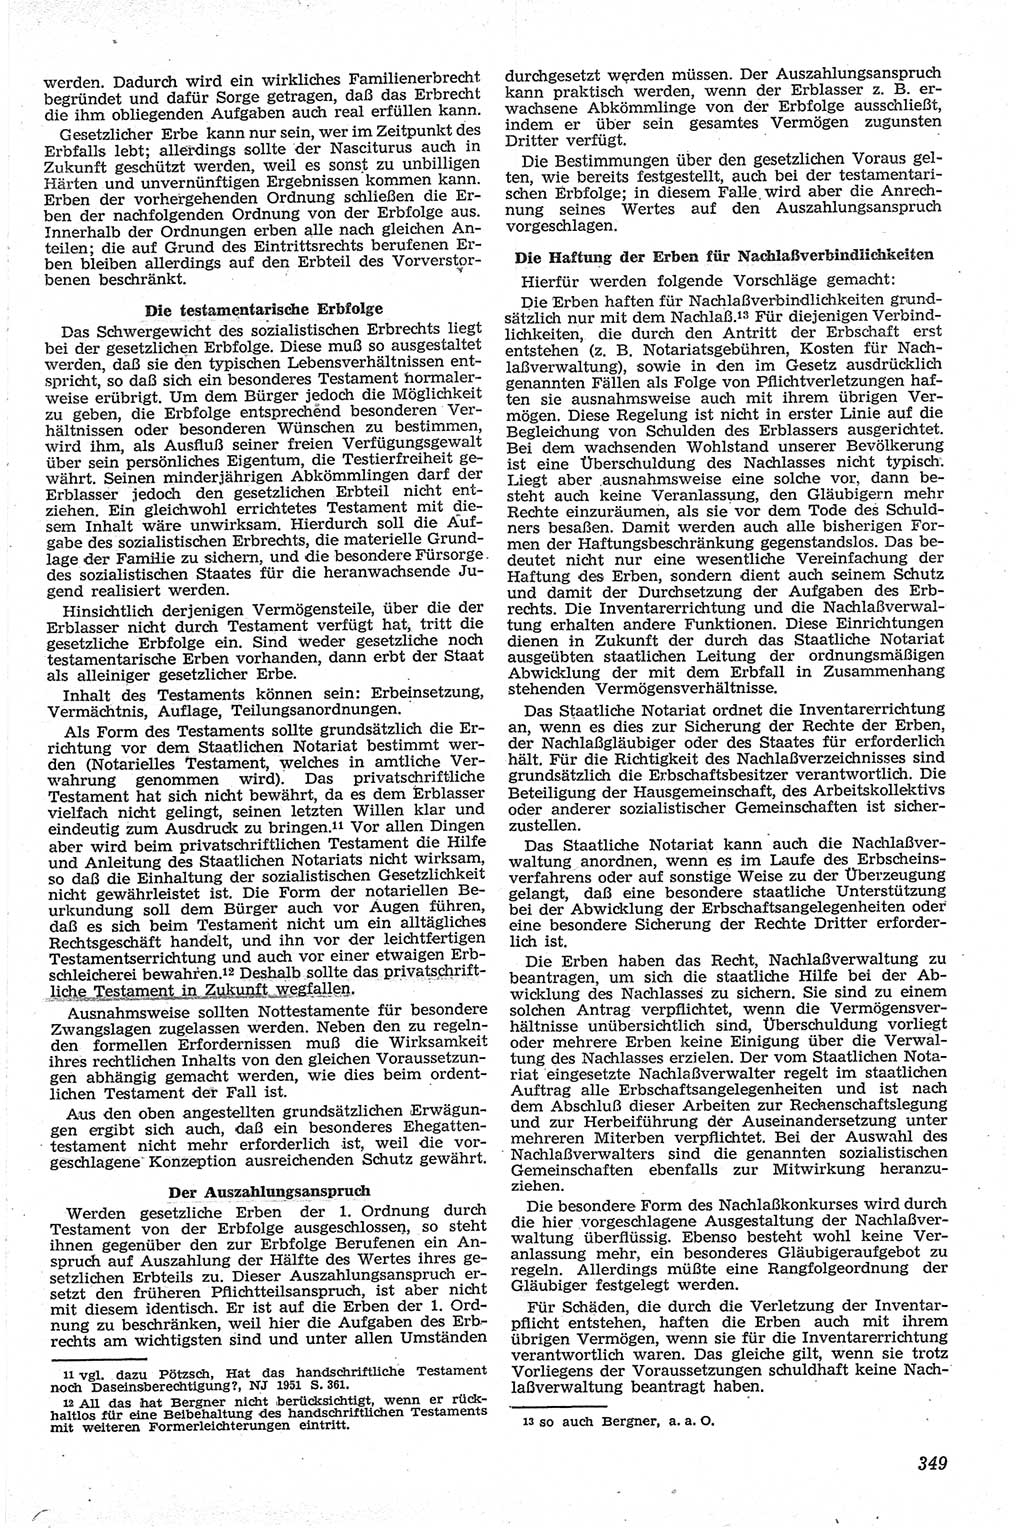 Neue Justiz (NJ), Zeitschrift für Recht und Rechtswissenschaft [Deutsche Demokratische Republik (DDR)], 13. Jahrgang 1959, Seite 349 (NJ DDR 1959, S. 349)